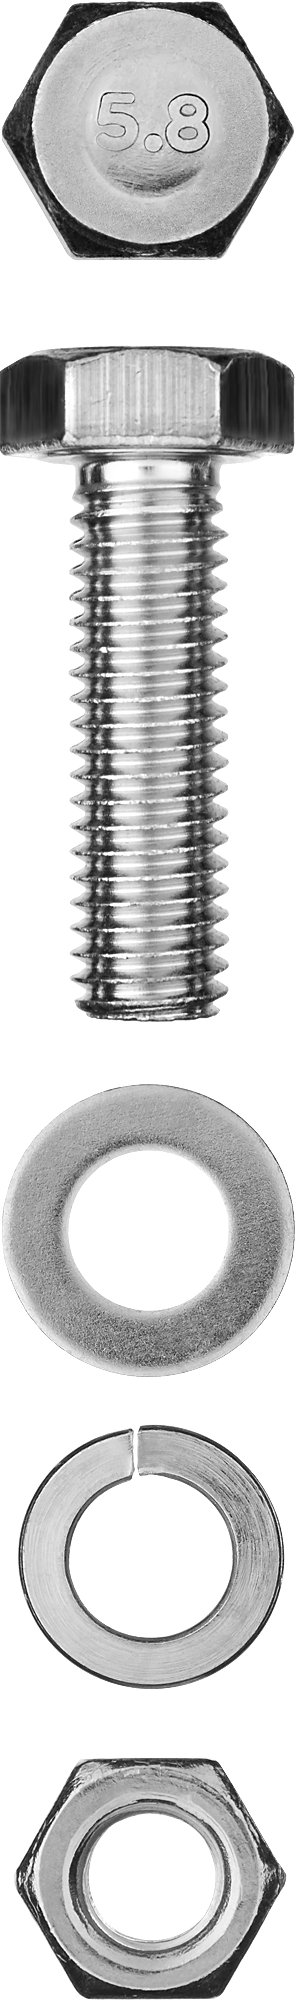 Болт (DIN933) в комплекте с гайкой (DIN934), шайбой (DIN125), шайбой пруж. (DIN127) Зубр 303436-06-020, М6, 2 см, 933 DIN, 6 мм, оцинкованная сталь, 11 шт., фасовка (303436-06-020)